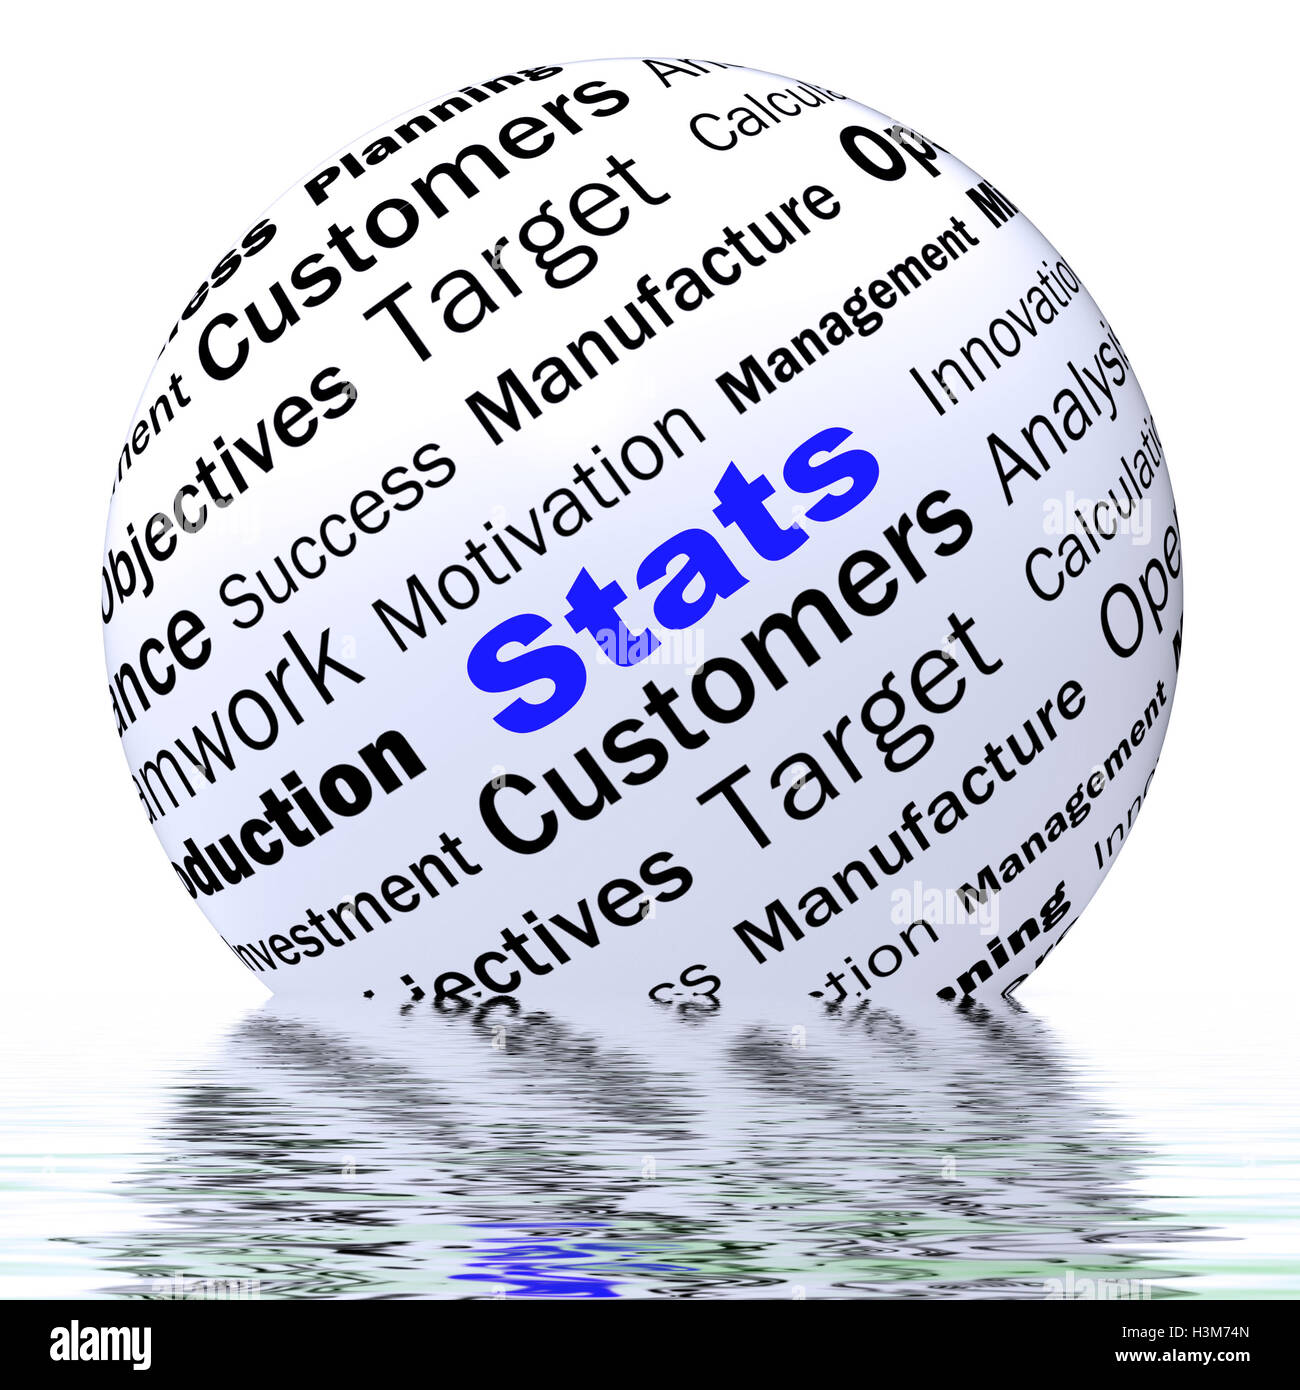 Definición de Esfera Stats muestra Informes de negocio y cifras Foto de stock